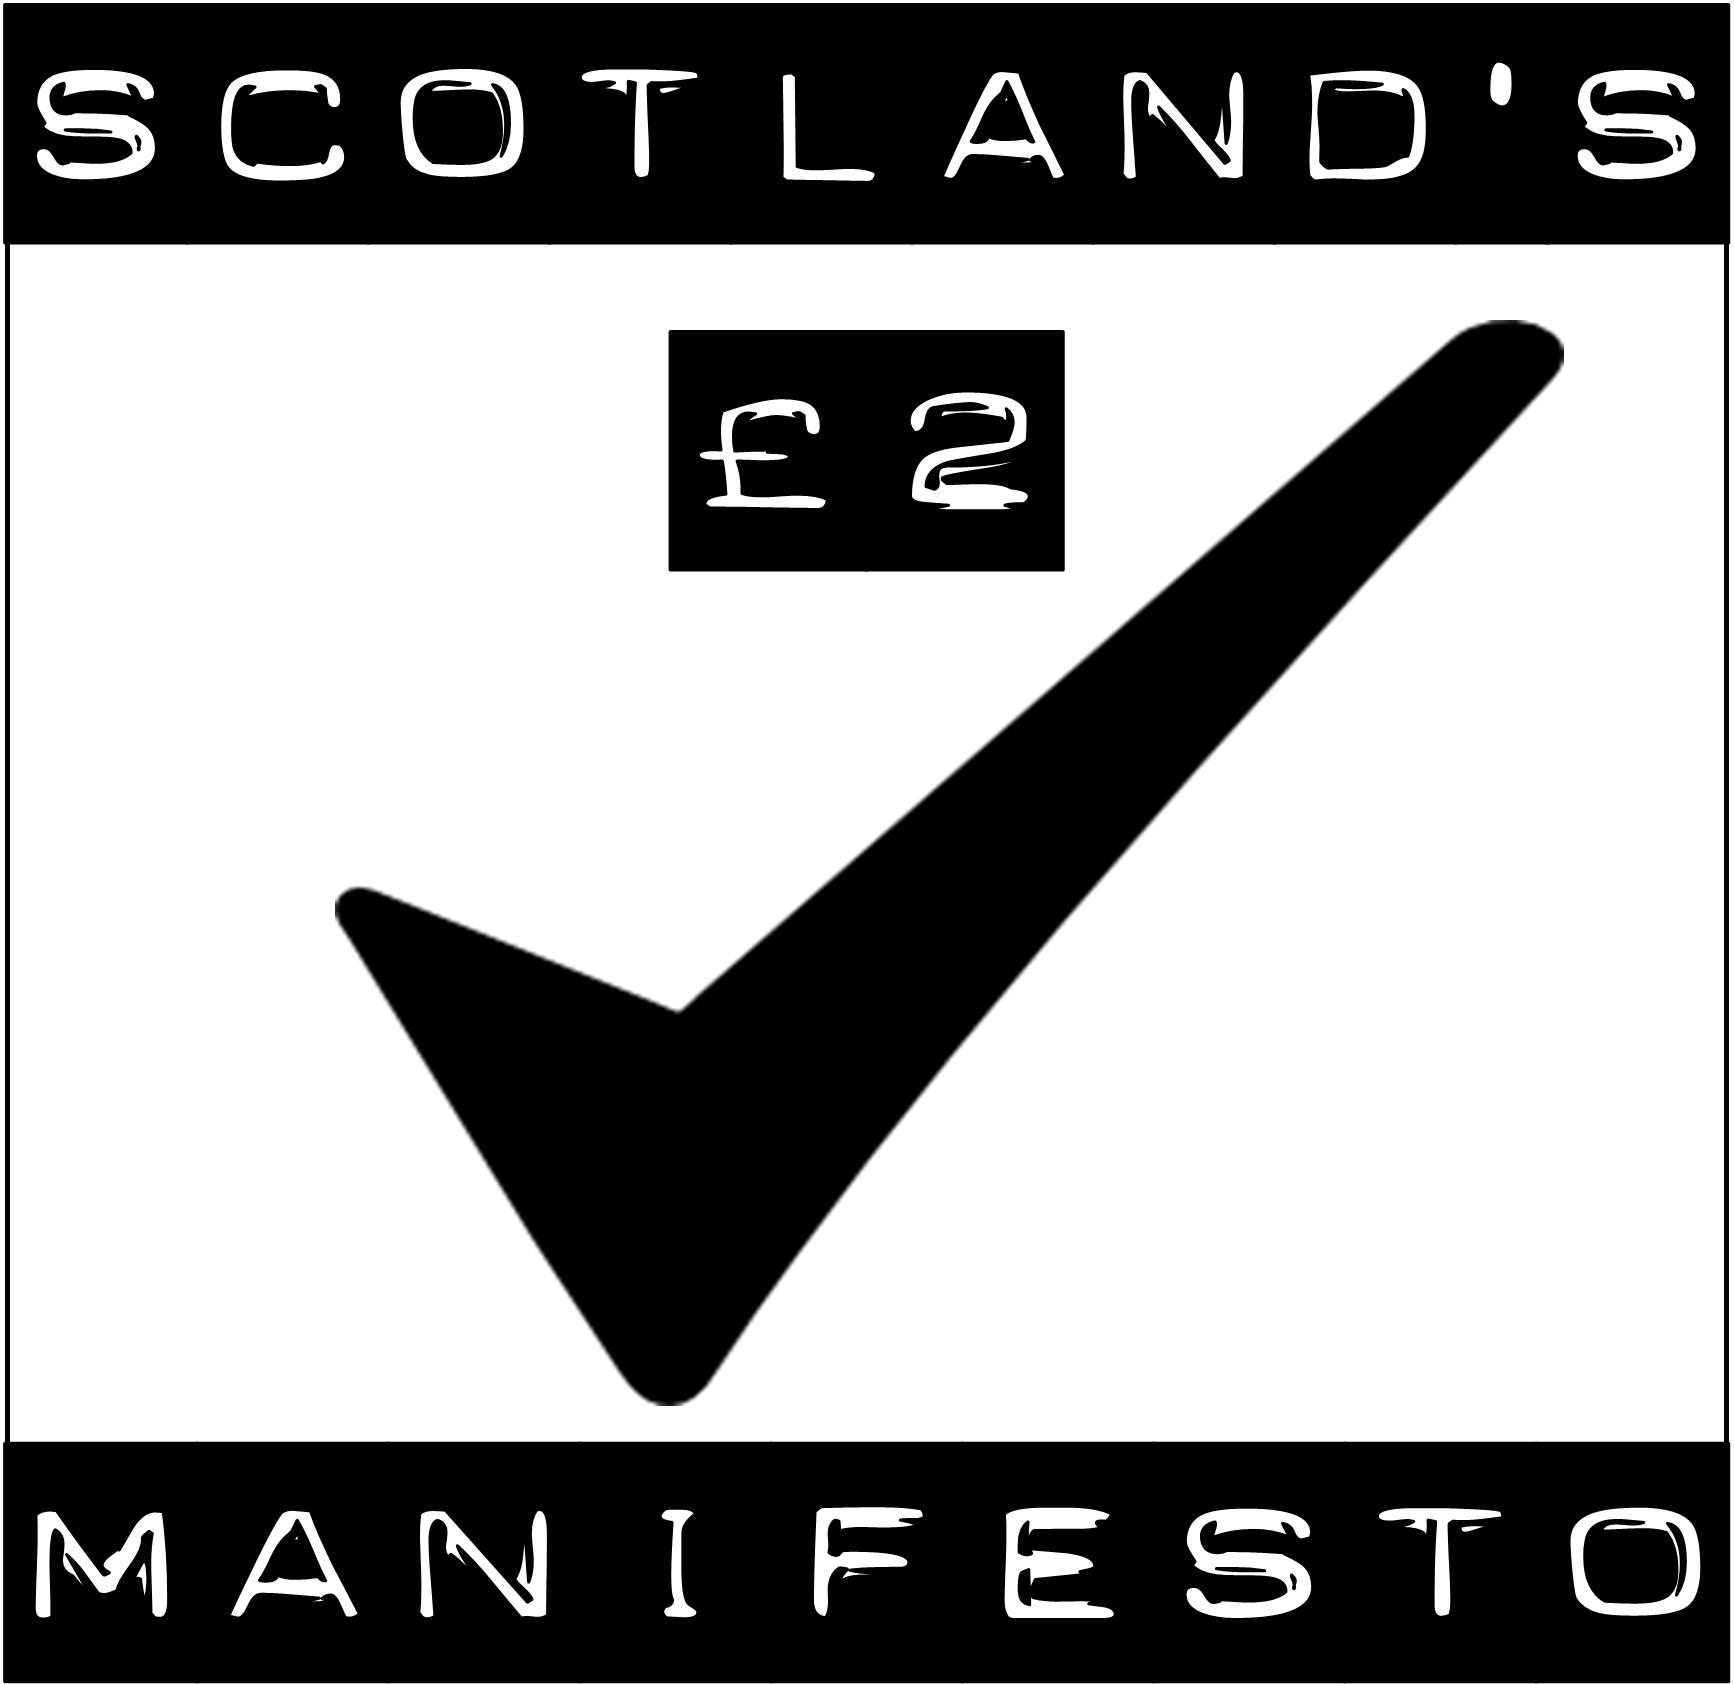 manifesto logo